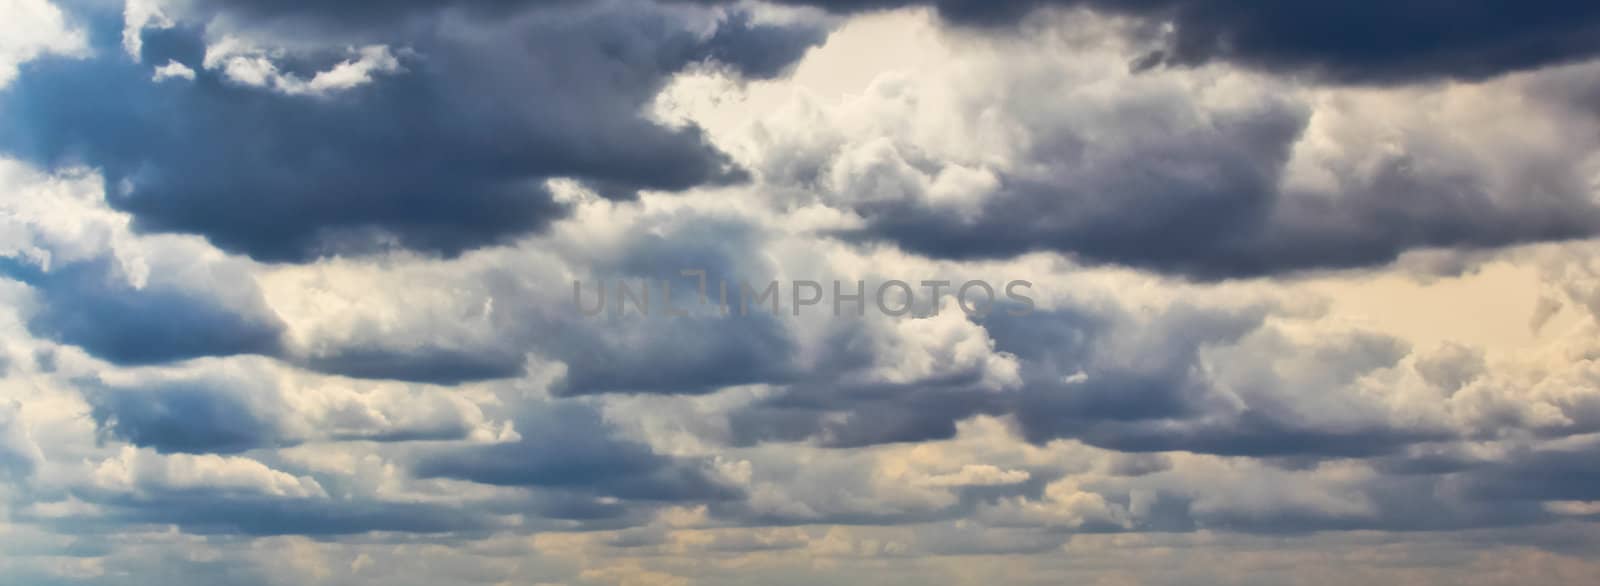 Cloudscapes by cflux